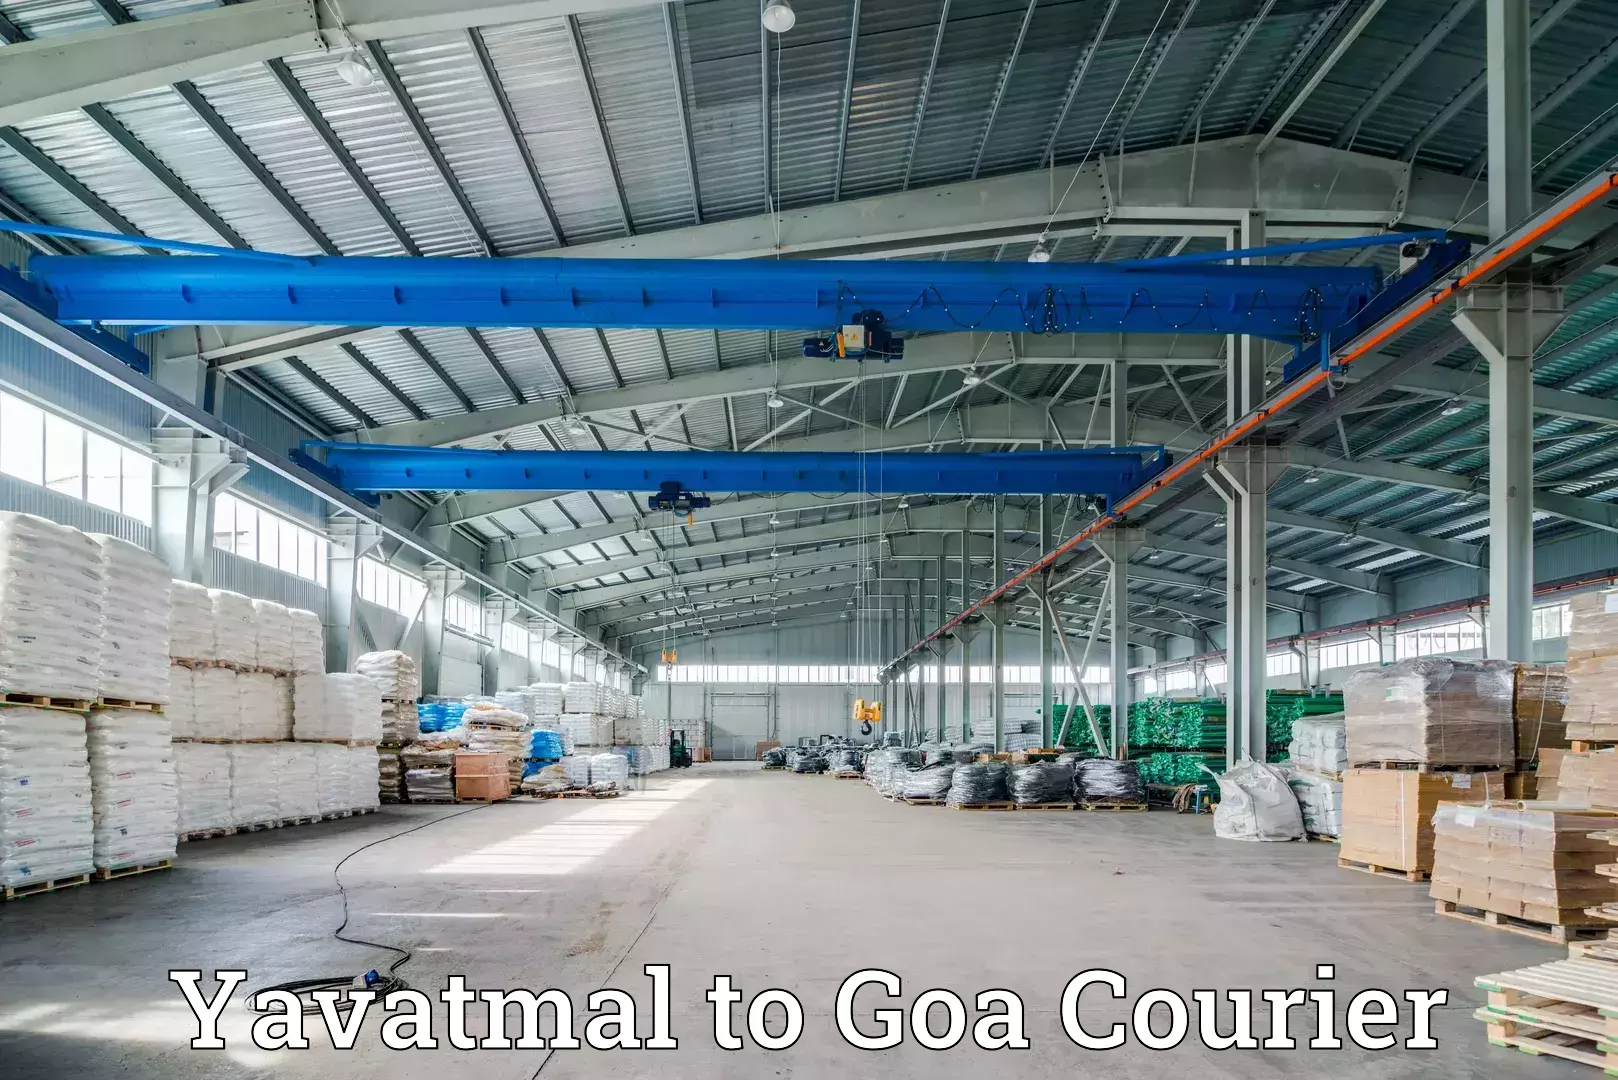 Global shipping networks Yavatmal to Goa